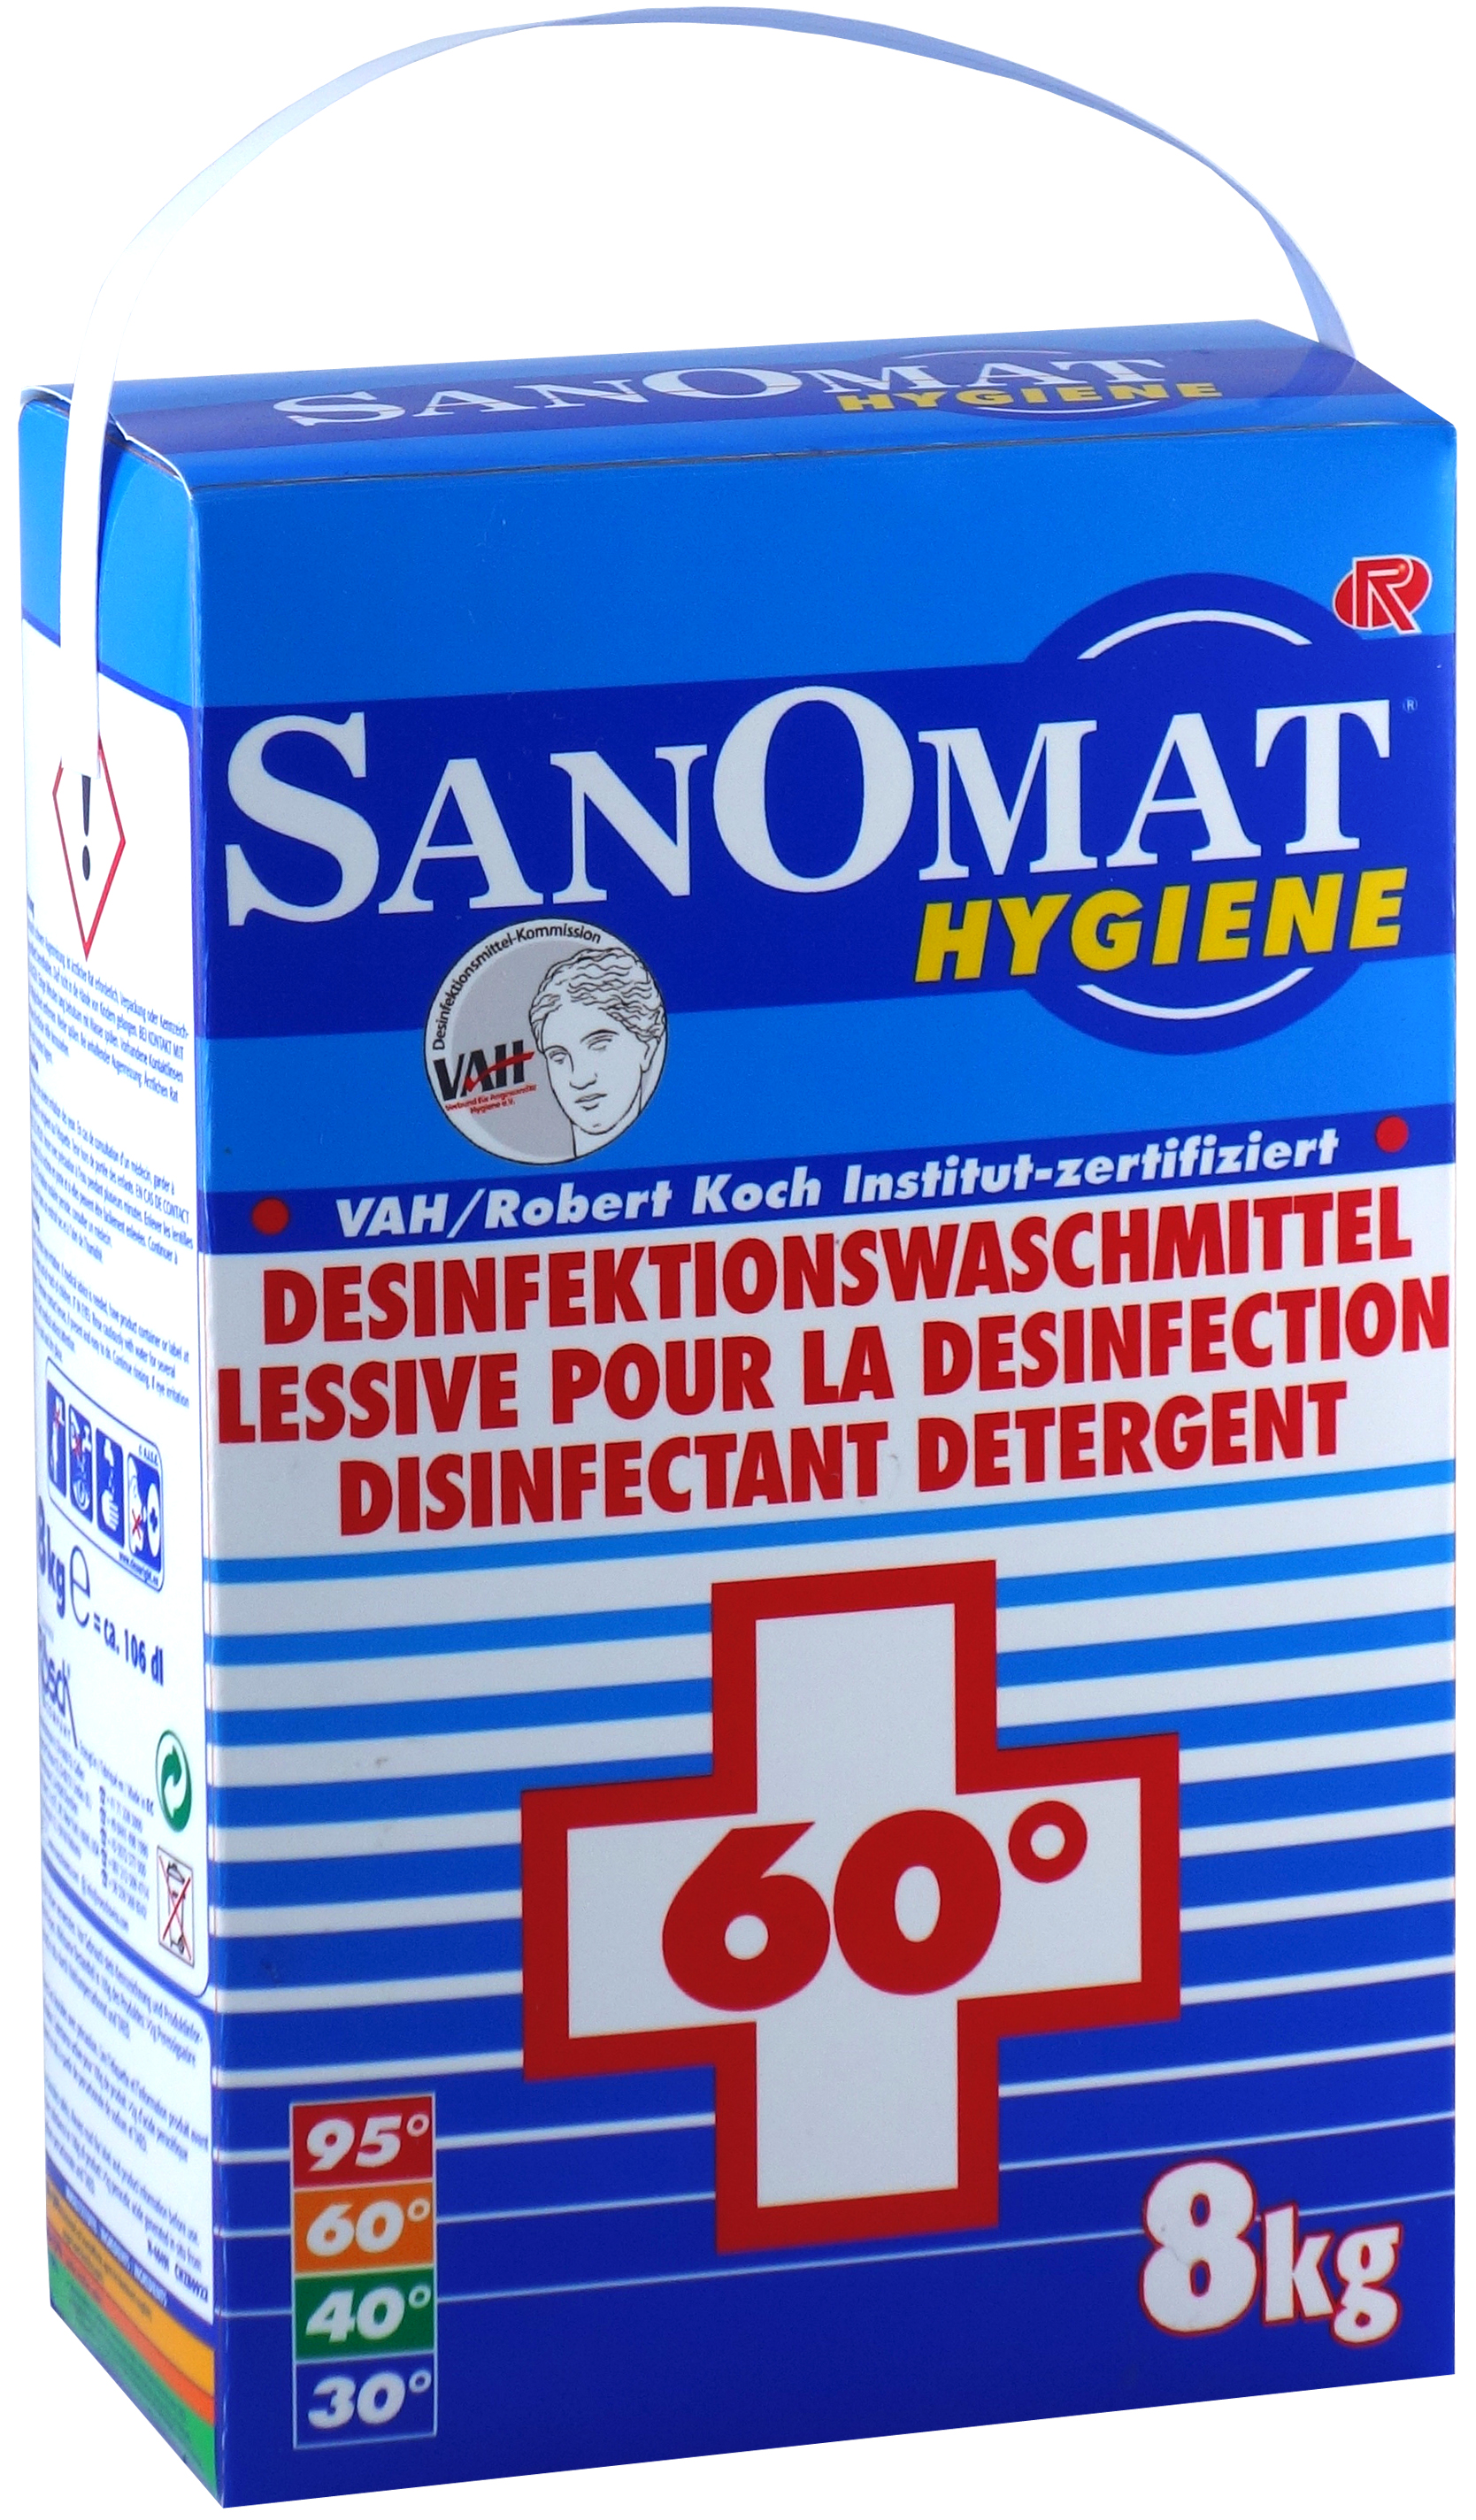 SANOMAT Hygiene Desinfektionswaschmittel, 8 kg